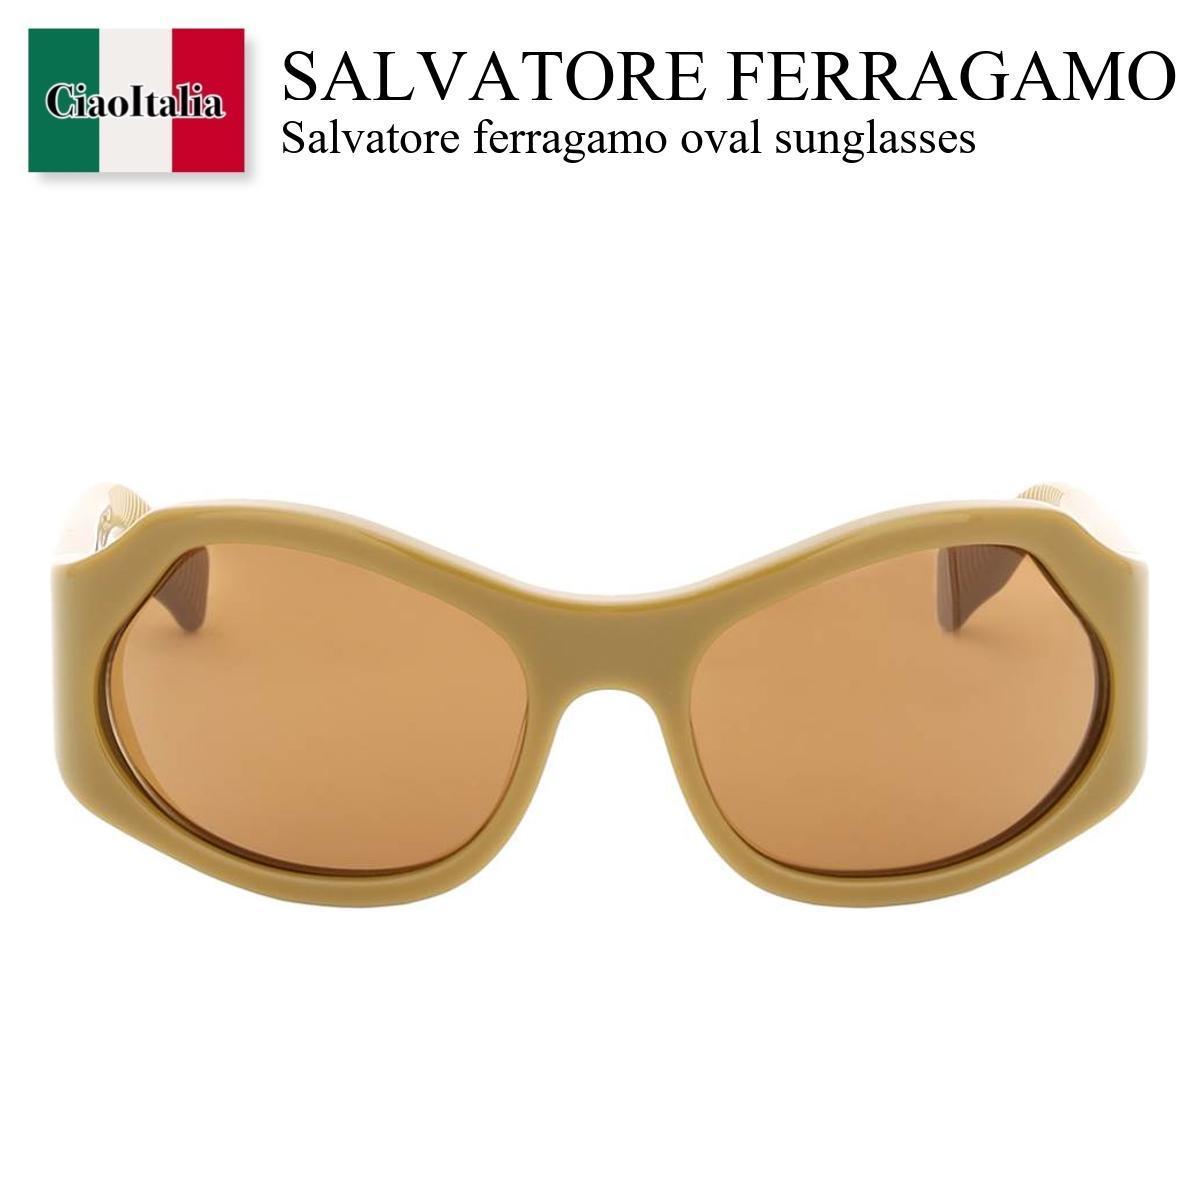 フェラガモ / Salvatore Ferragamo Oval Sunglasses / SF1078S / SF1078S 320 / SF1078S320 / サングラス / 「正規品補償」「VIP価格販売」「お買い物サポート」